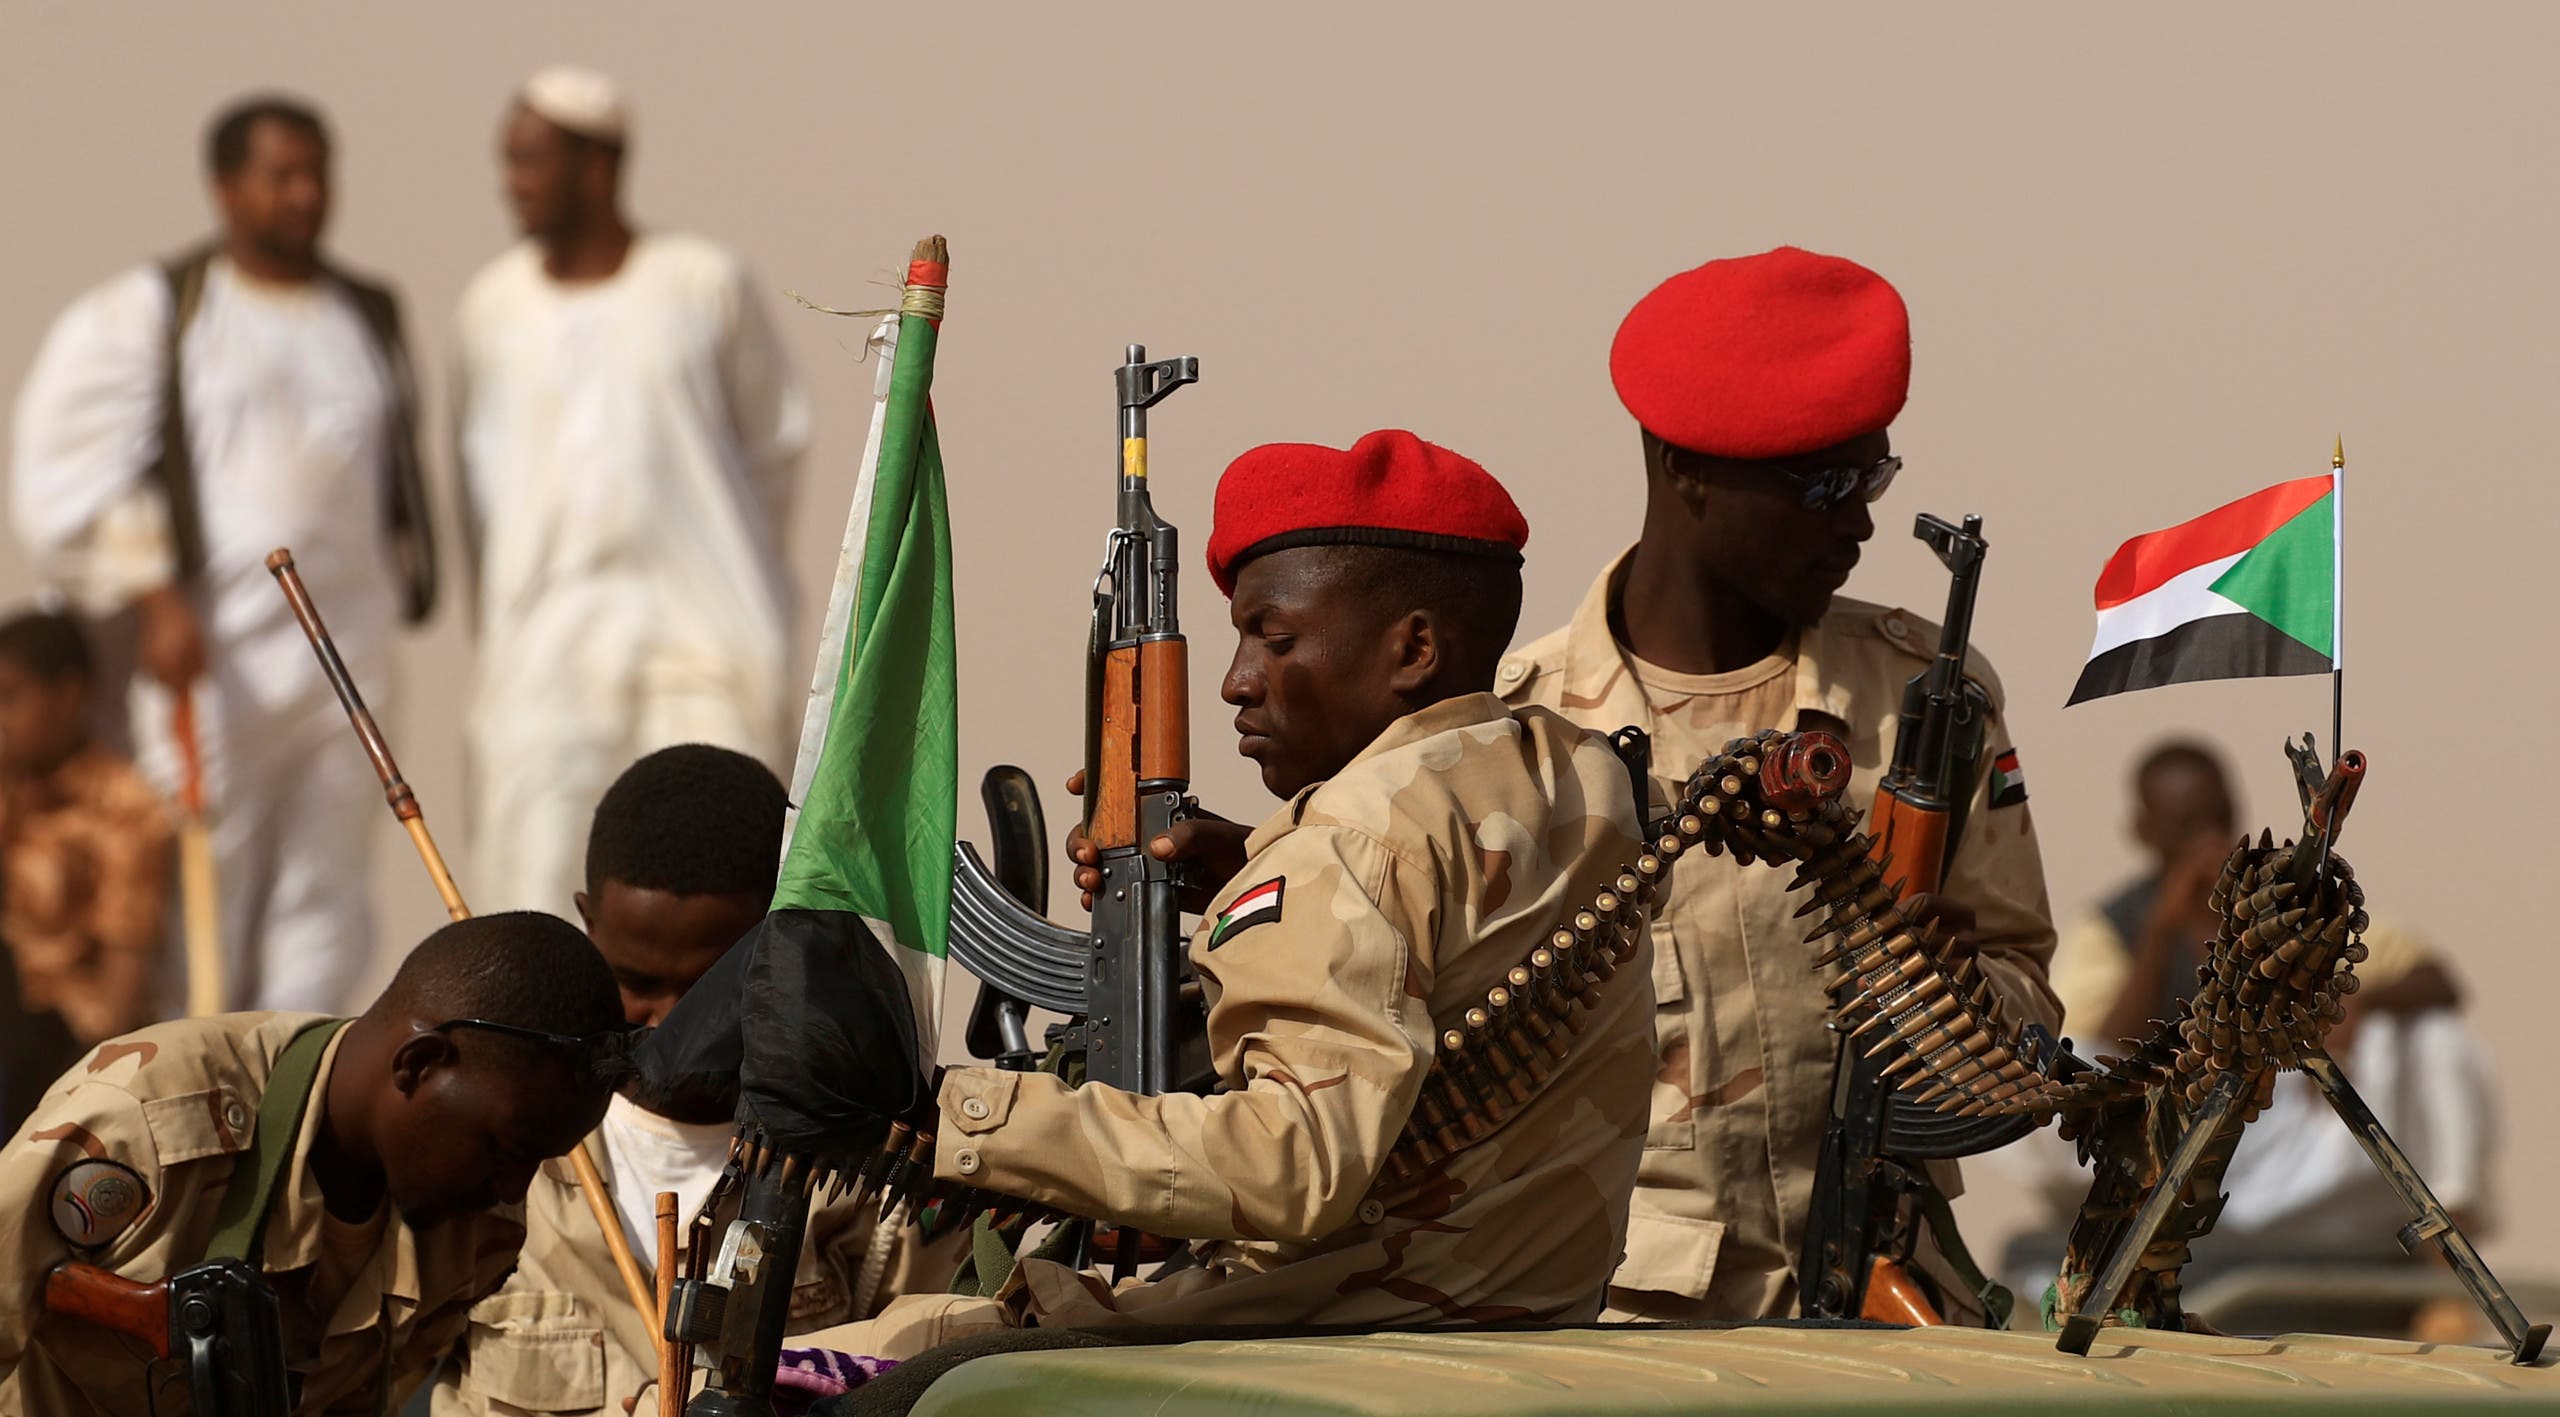   السودان : اختراق طائرة عسكرية أثيوبية لحدودنا «تصعيد خطير»